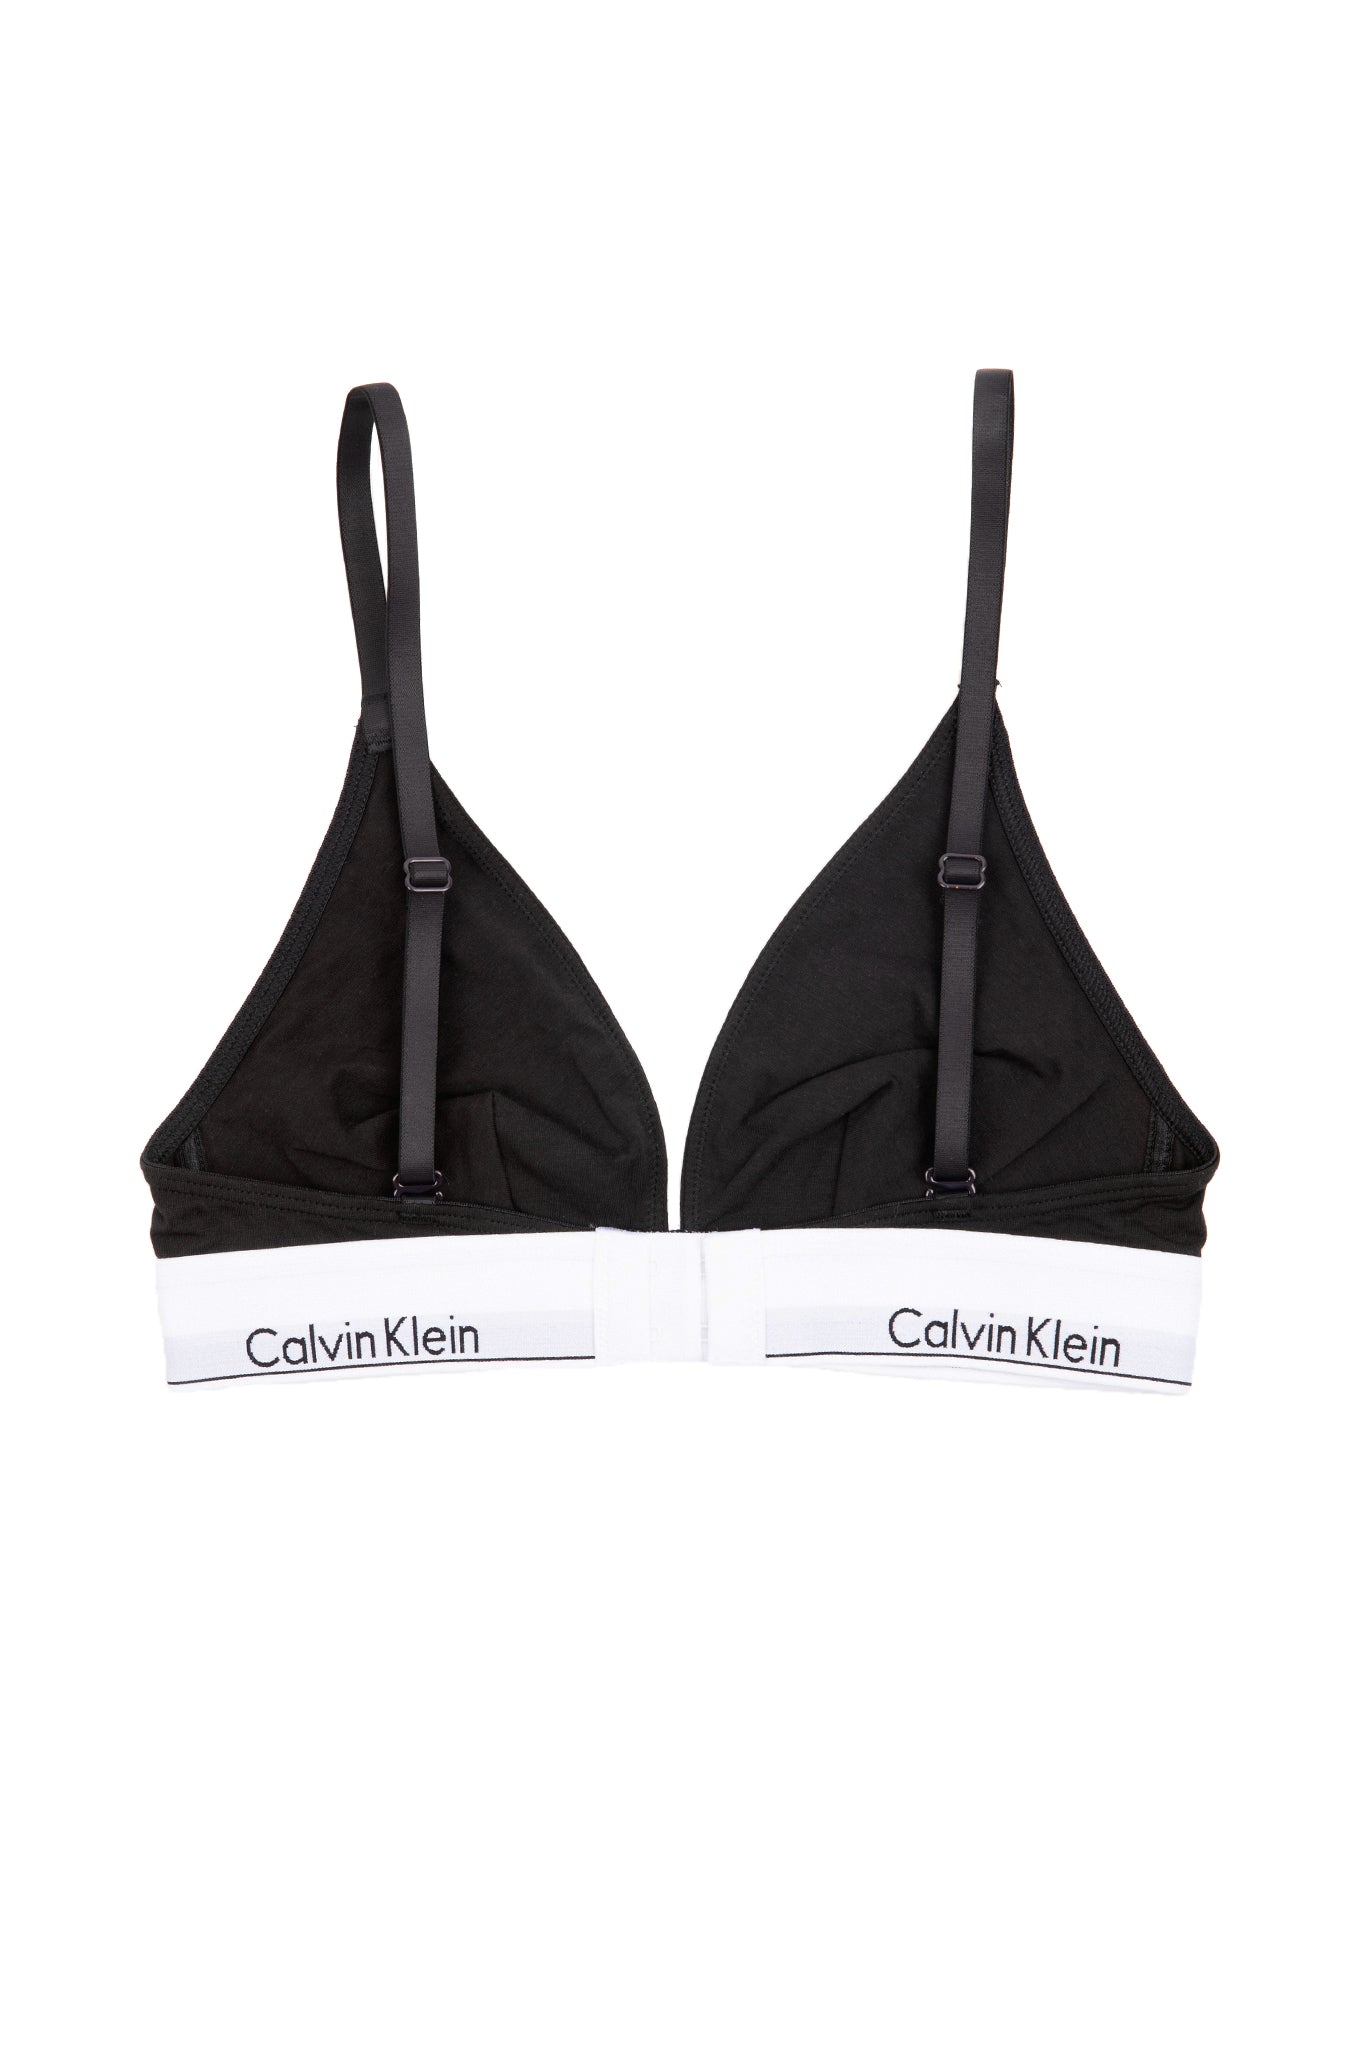 Calvin Klein, Intimates & Sleepwear, Calvin Klein 2 Bras Size 36c